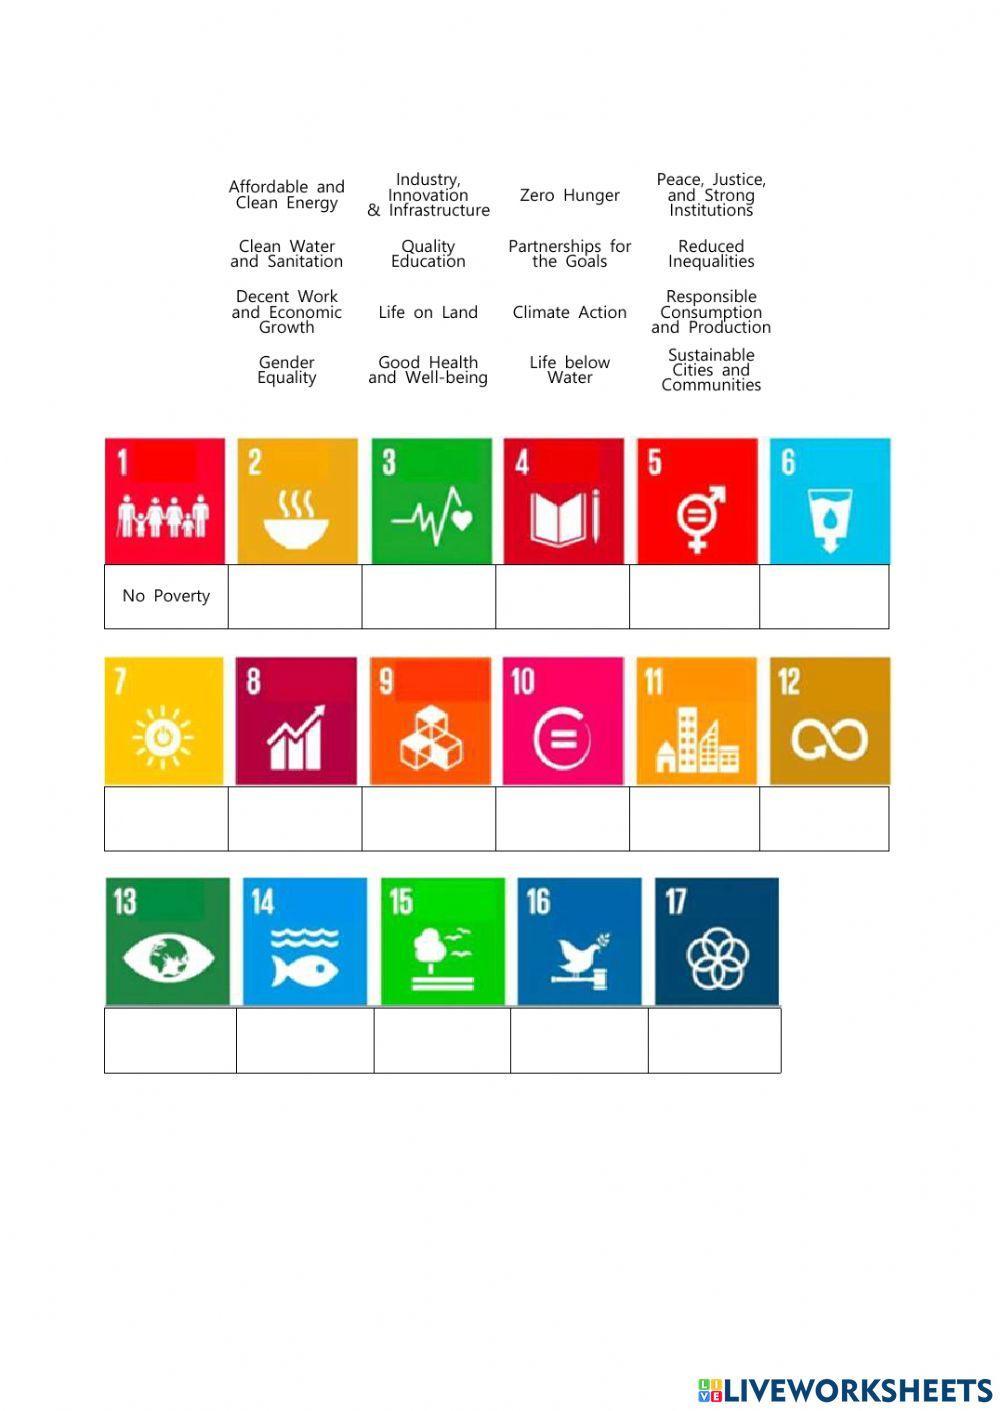 SDGs goals